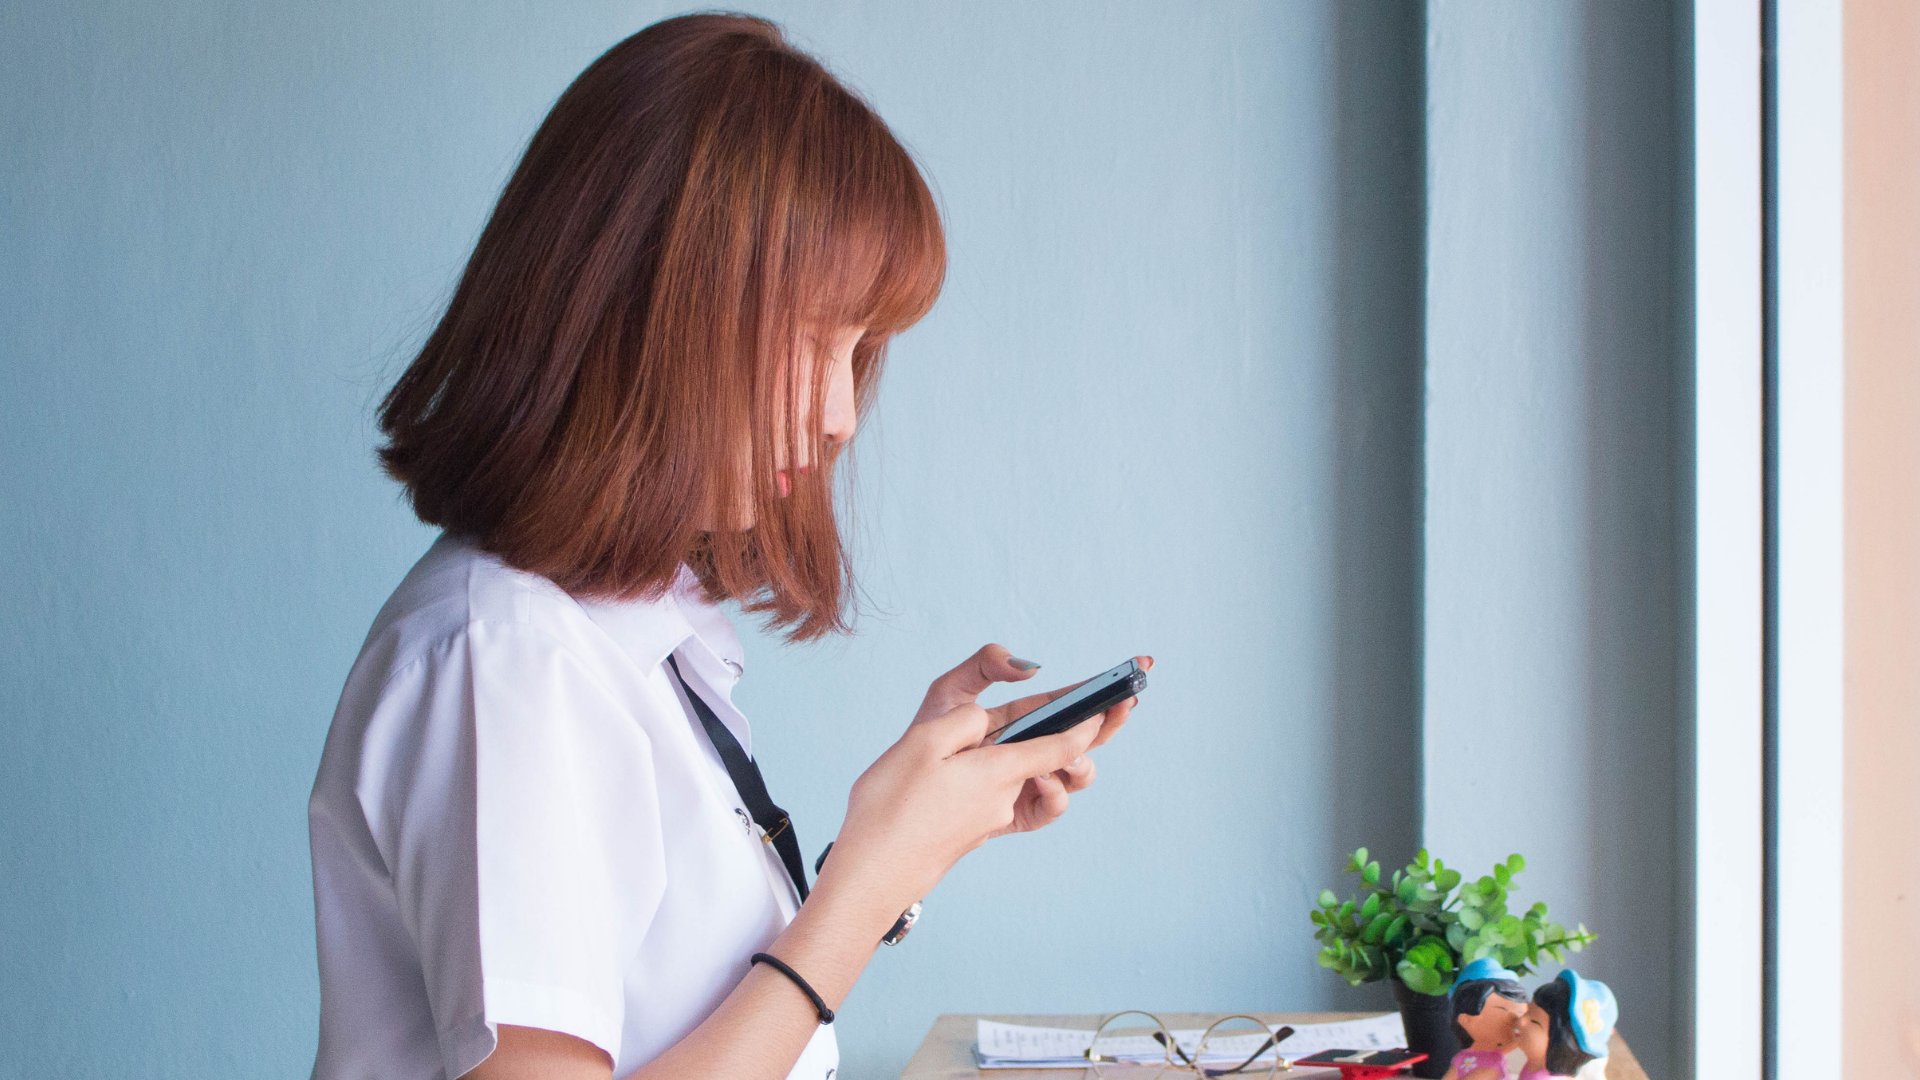 Uma mulher asiática de cabelos ruivos olhando um celular fixamente